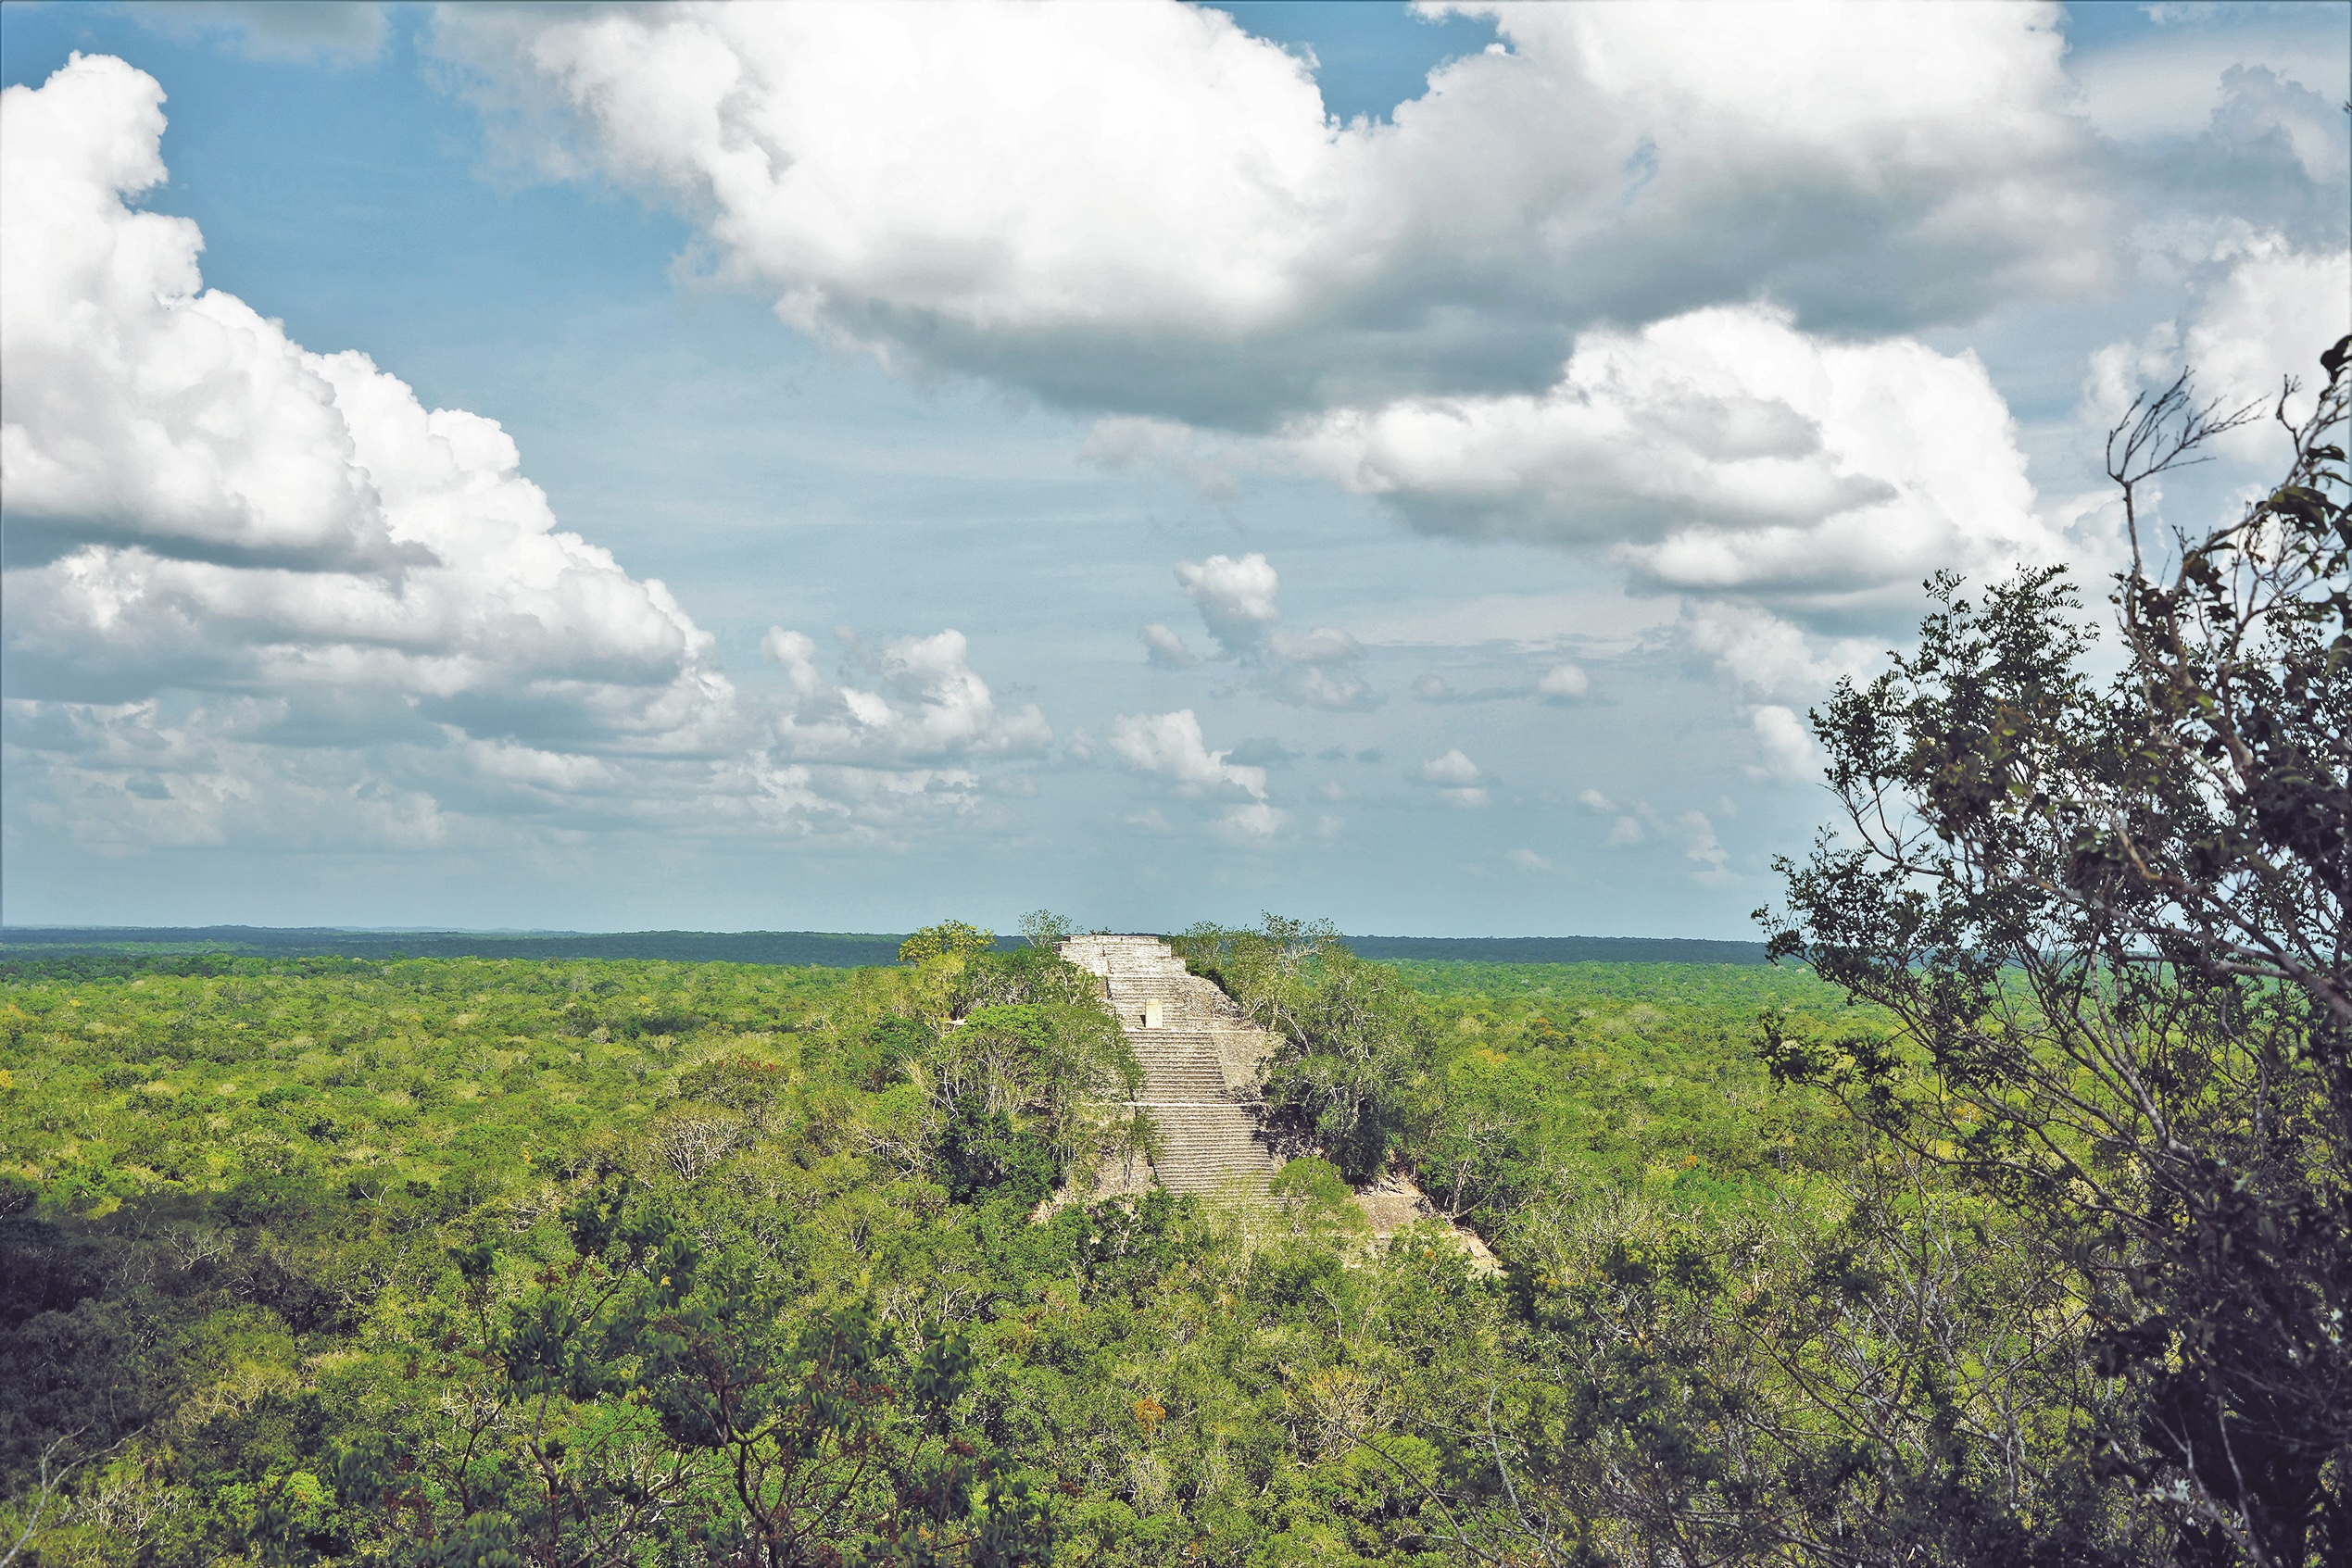 La forêt tropicale de Campeche abrite, entre autres, le merveilleux site maya de Calakmul. CC-BY-SA-3.0 Norberto Negrete